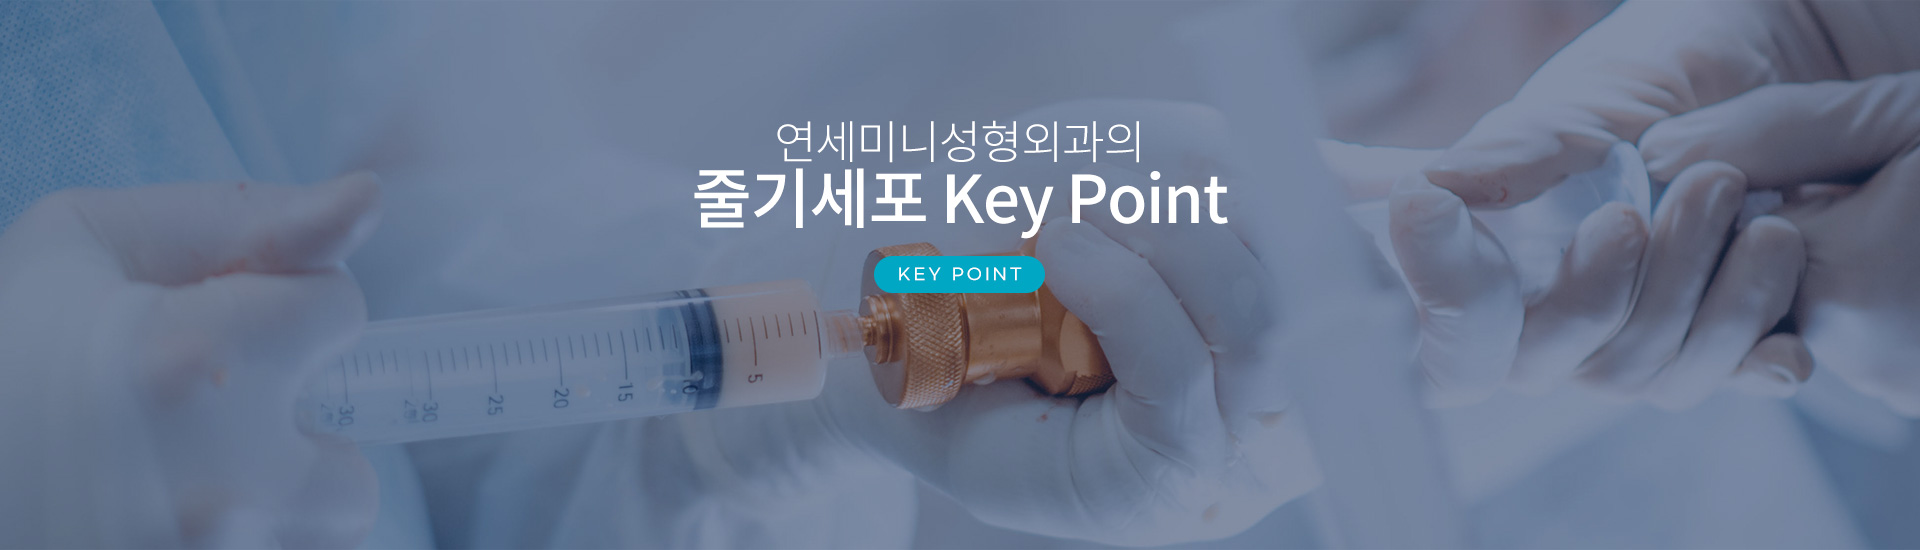 연세미니 성형외과의 줄기세포 Key Point